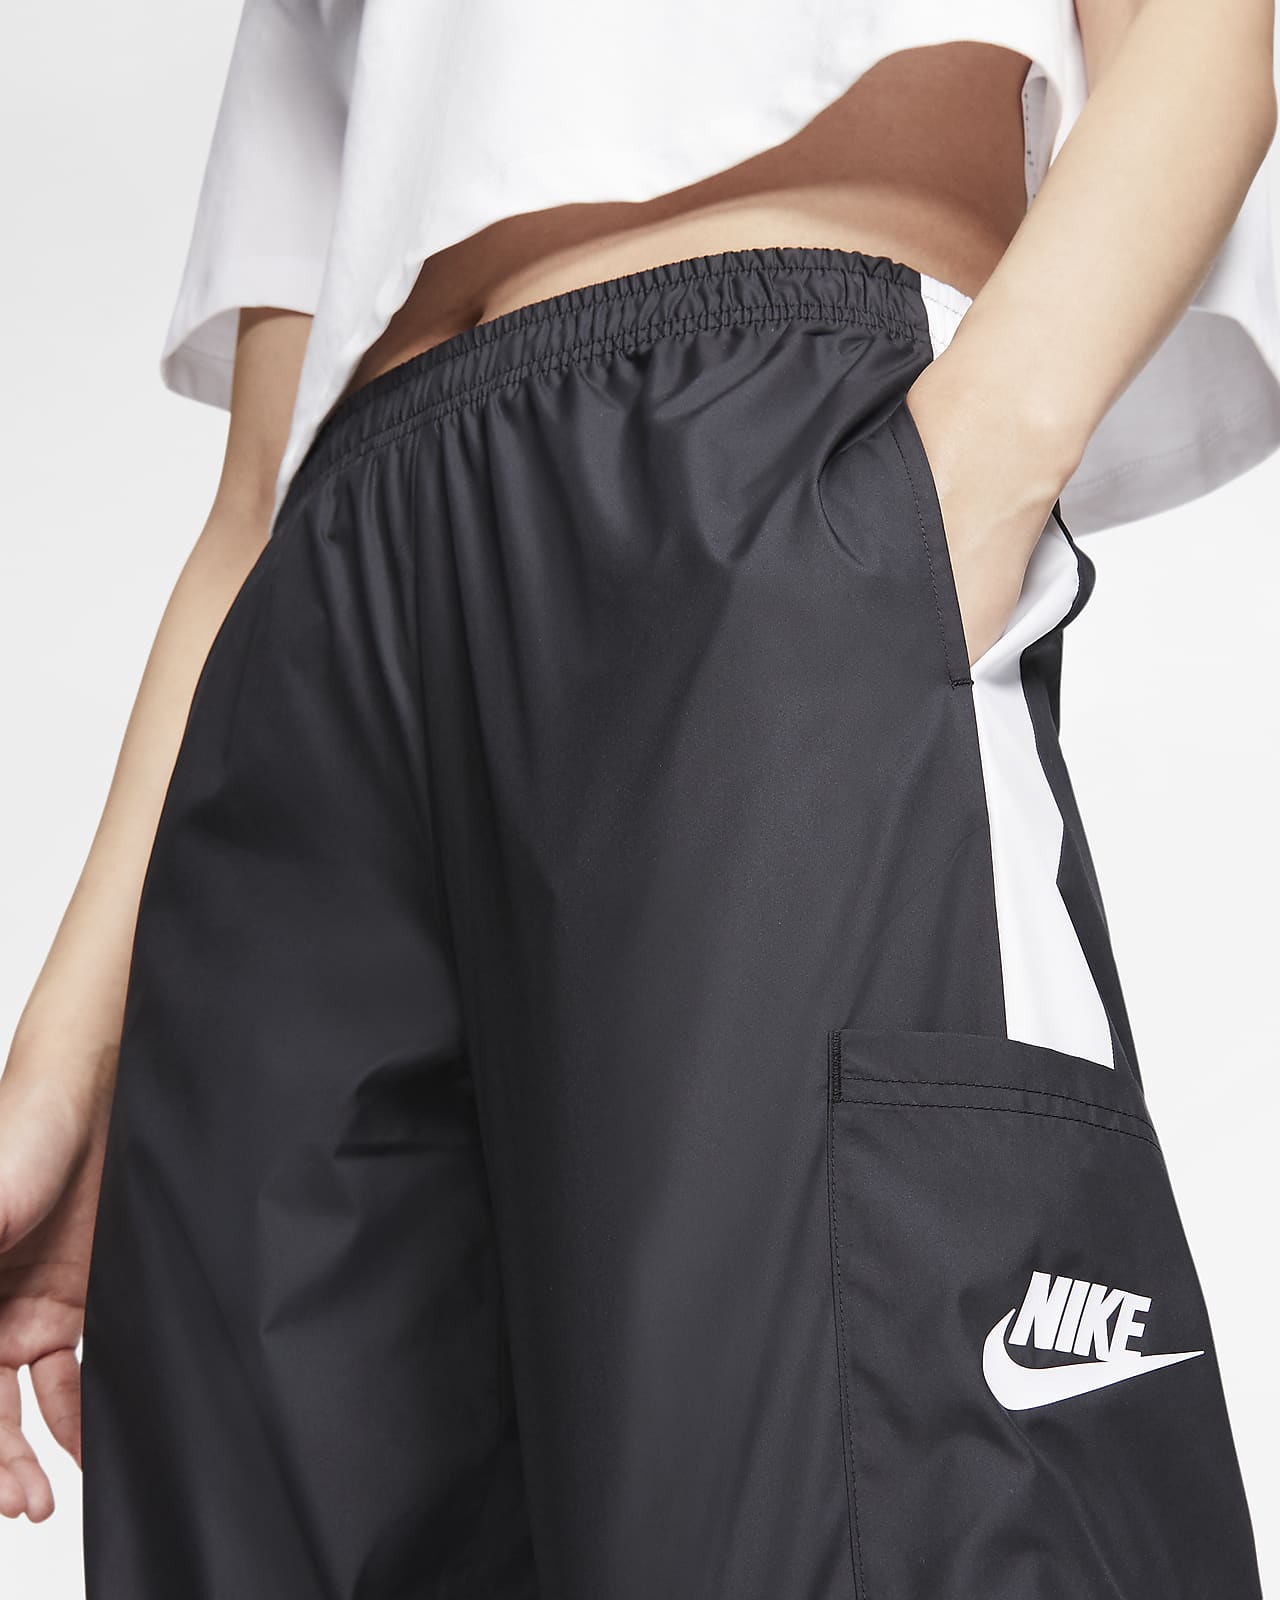 Nike Sportswear Woven Pants 'Speed Yellow/Black' - CJ6347-735